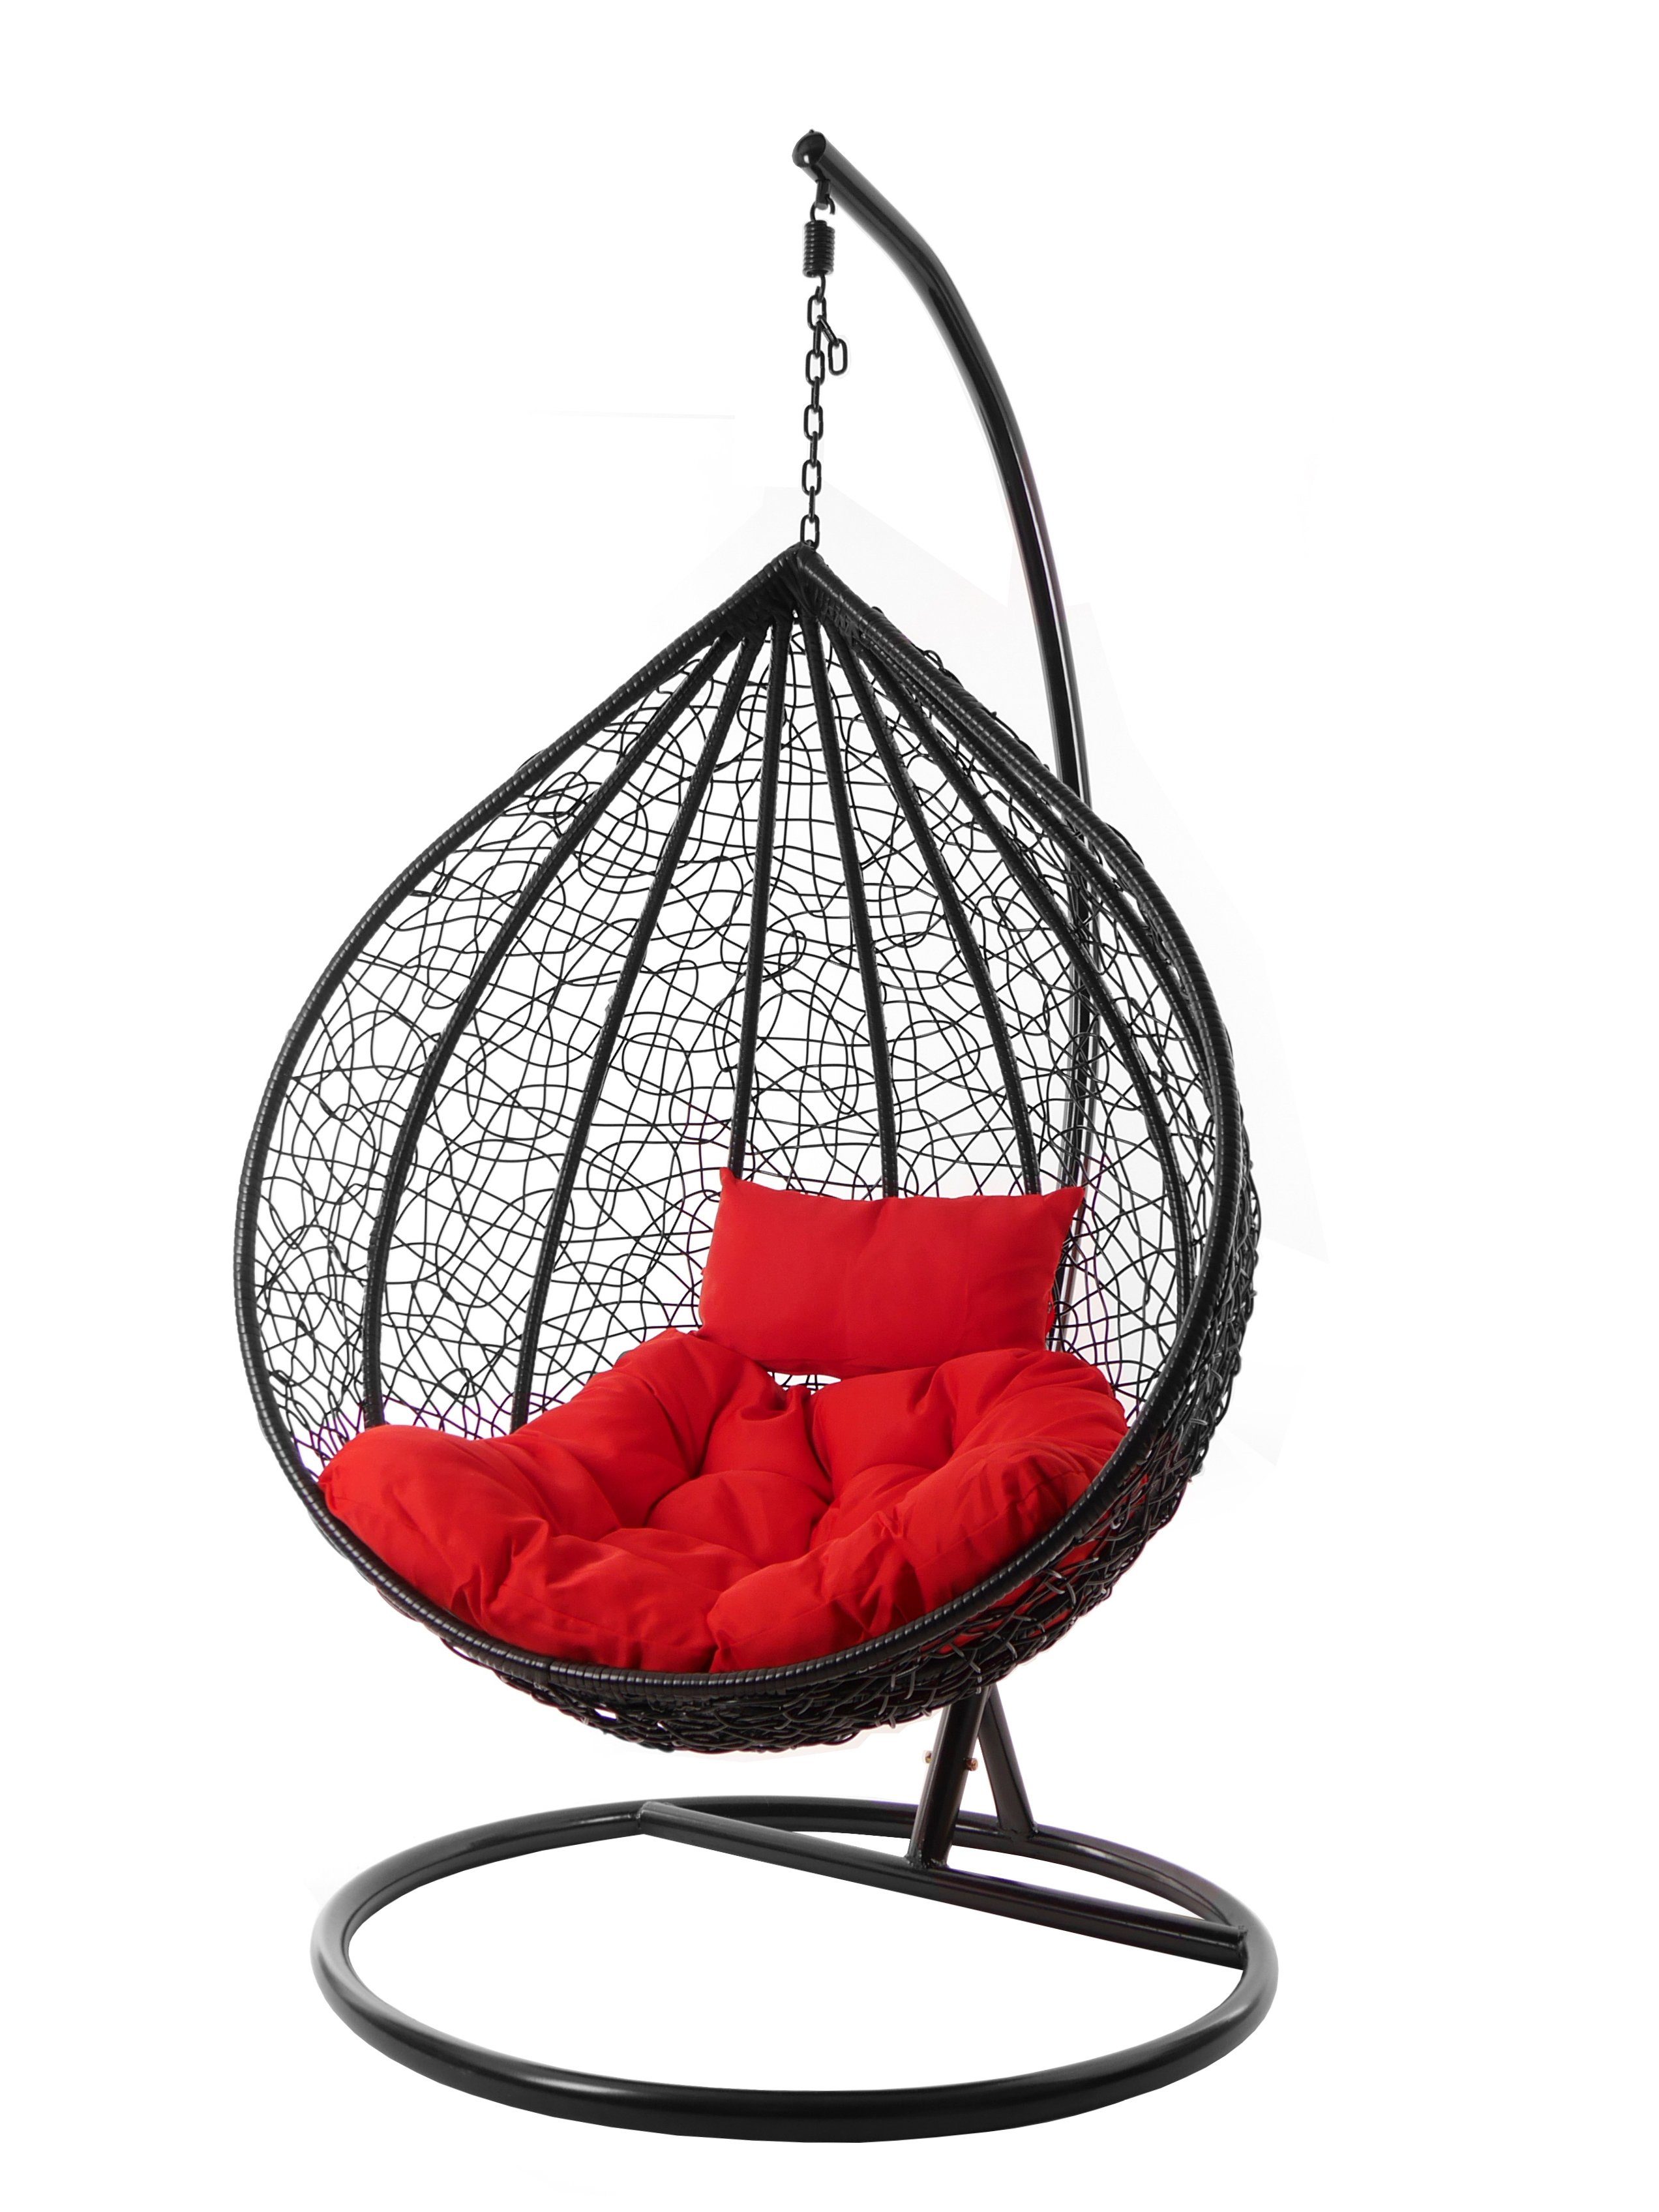 KIDEO Hängesessel Hängesessel MANACOR schwarz, edles schwarz, moderner Swing Chair, Schwebesessel inklusive Gestell und Kissen rot (3050 scarlet)